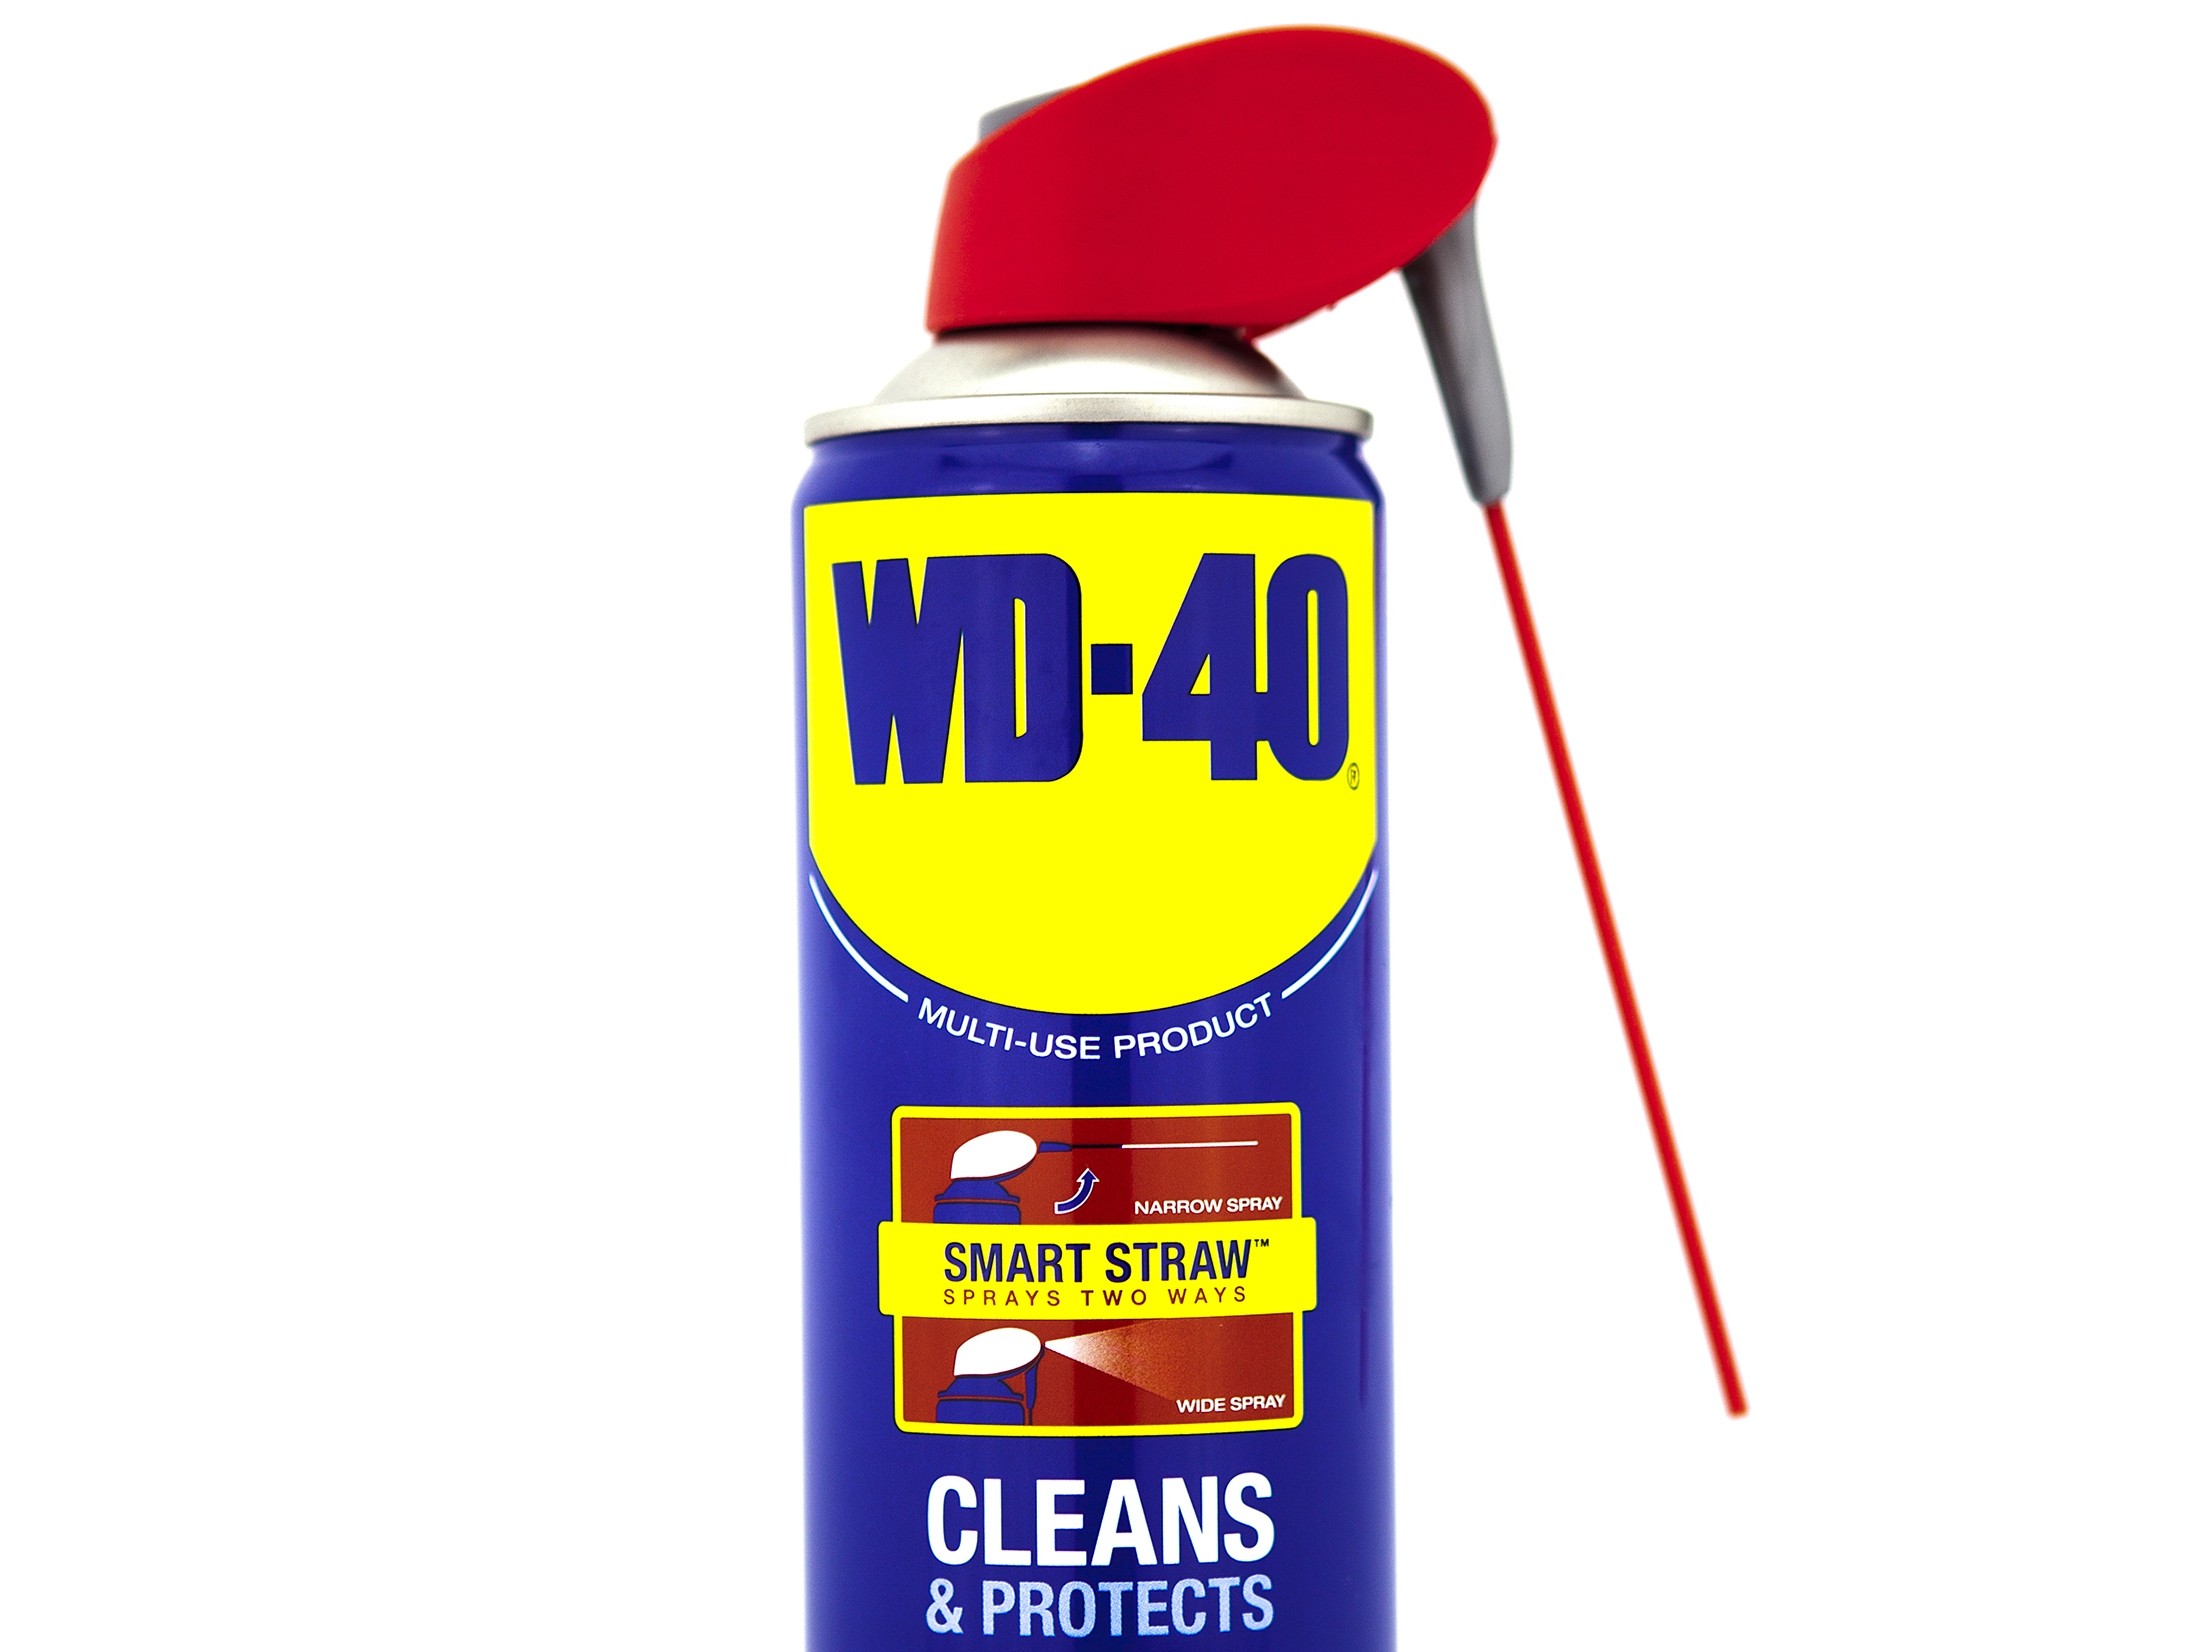 I use WD 40 сжатый воздух